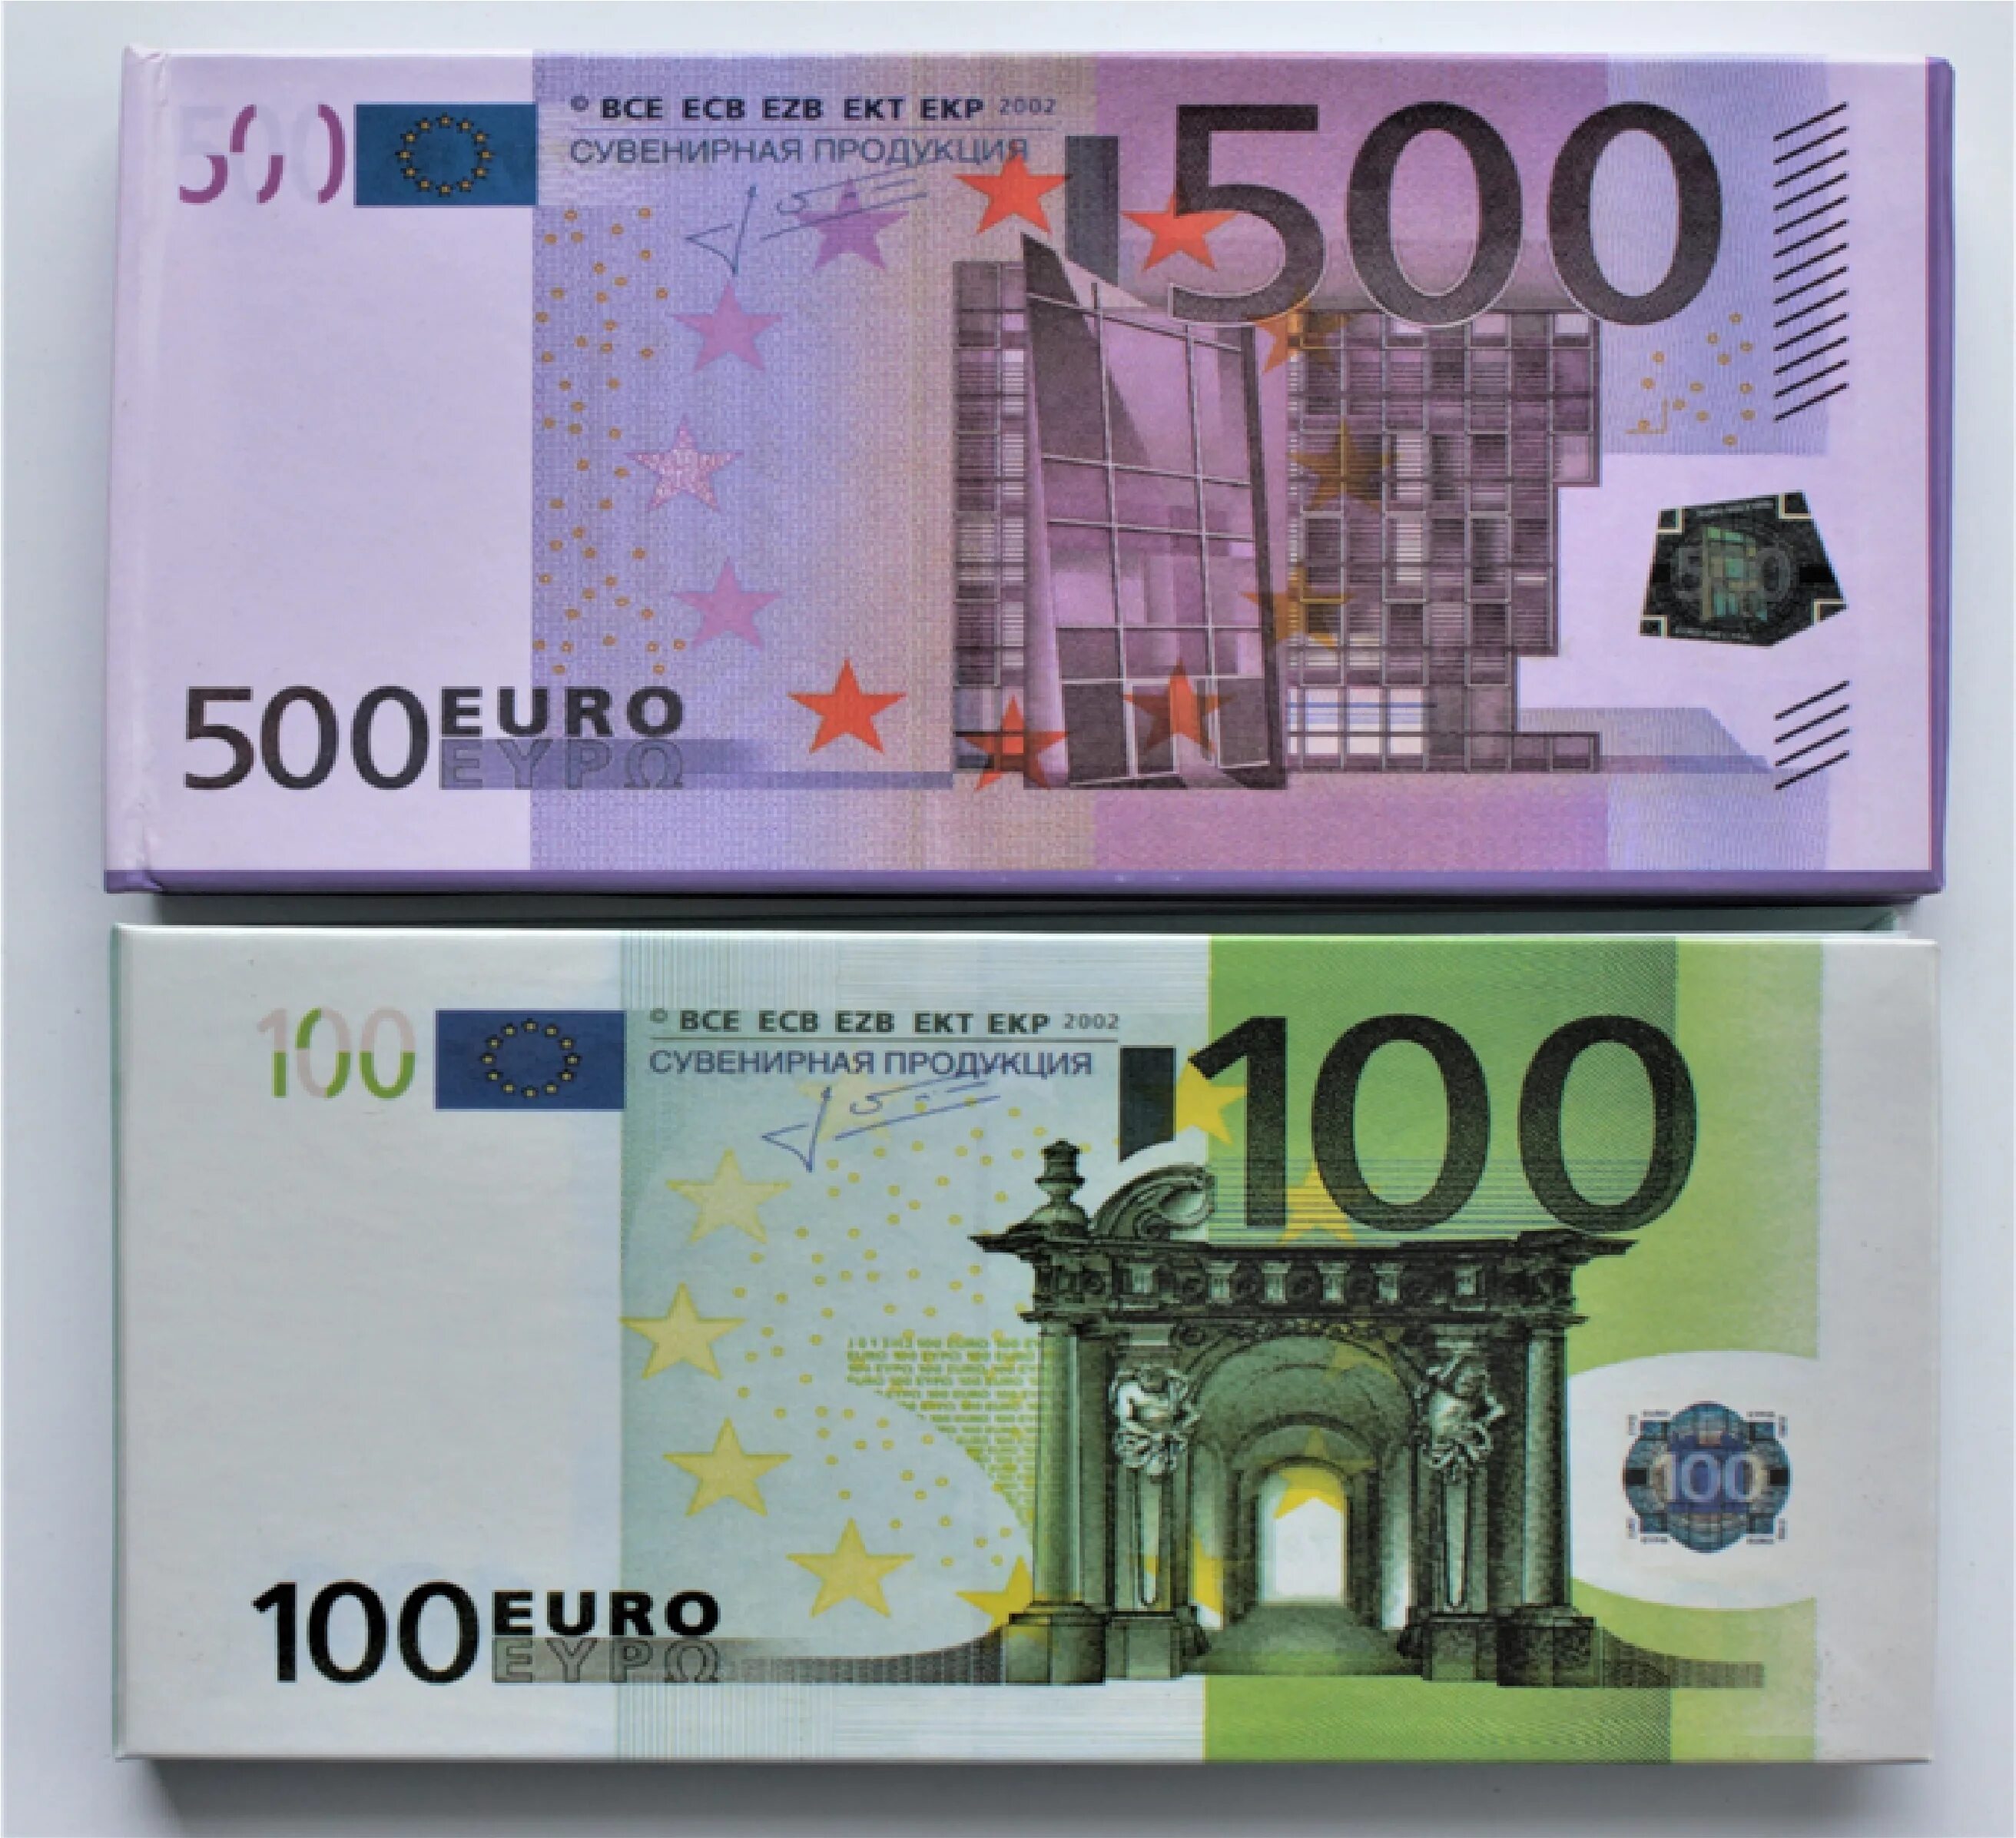 Сколько 500 евро в рублях на сегодня. 500 Евро купюра 2002. 100 Евро купюра. 500 Евро и 100 евро. Деньги 500 евро.